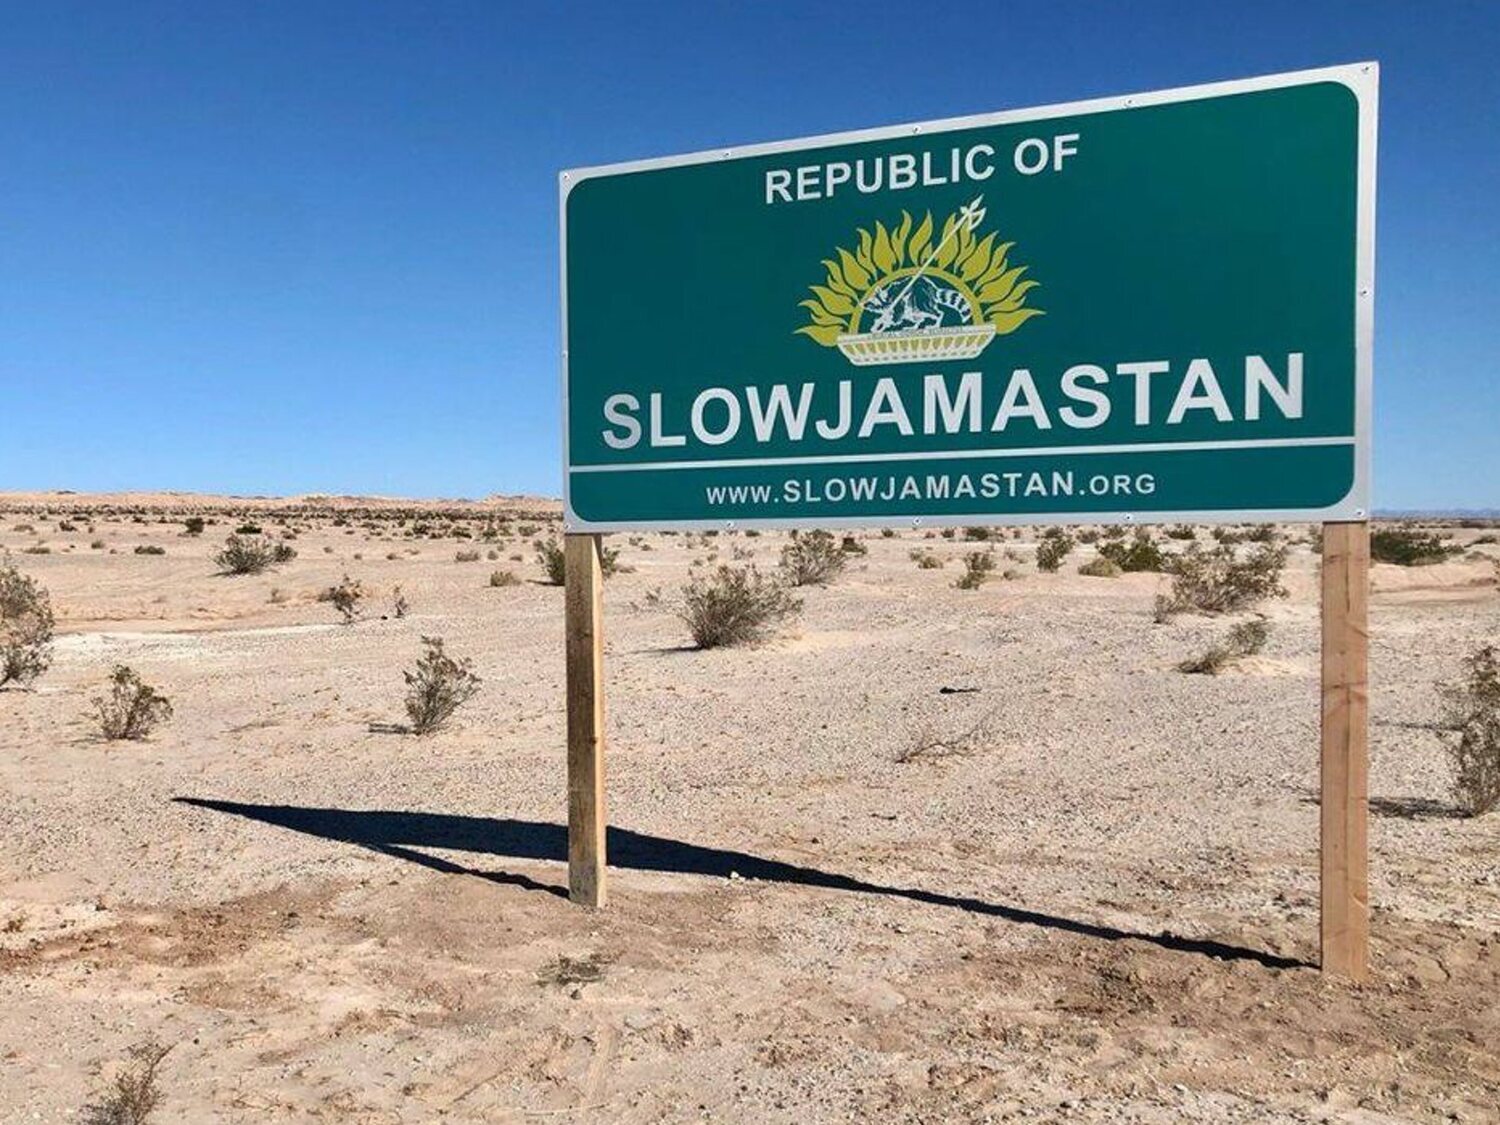 Así es Slowjamastan, la nación más pequeña del mundo creada por un DJ en EEUU